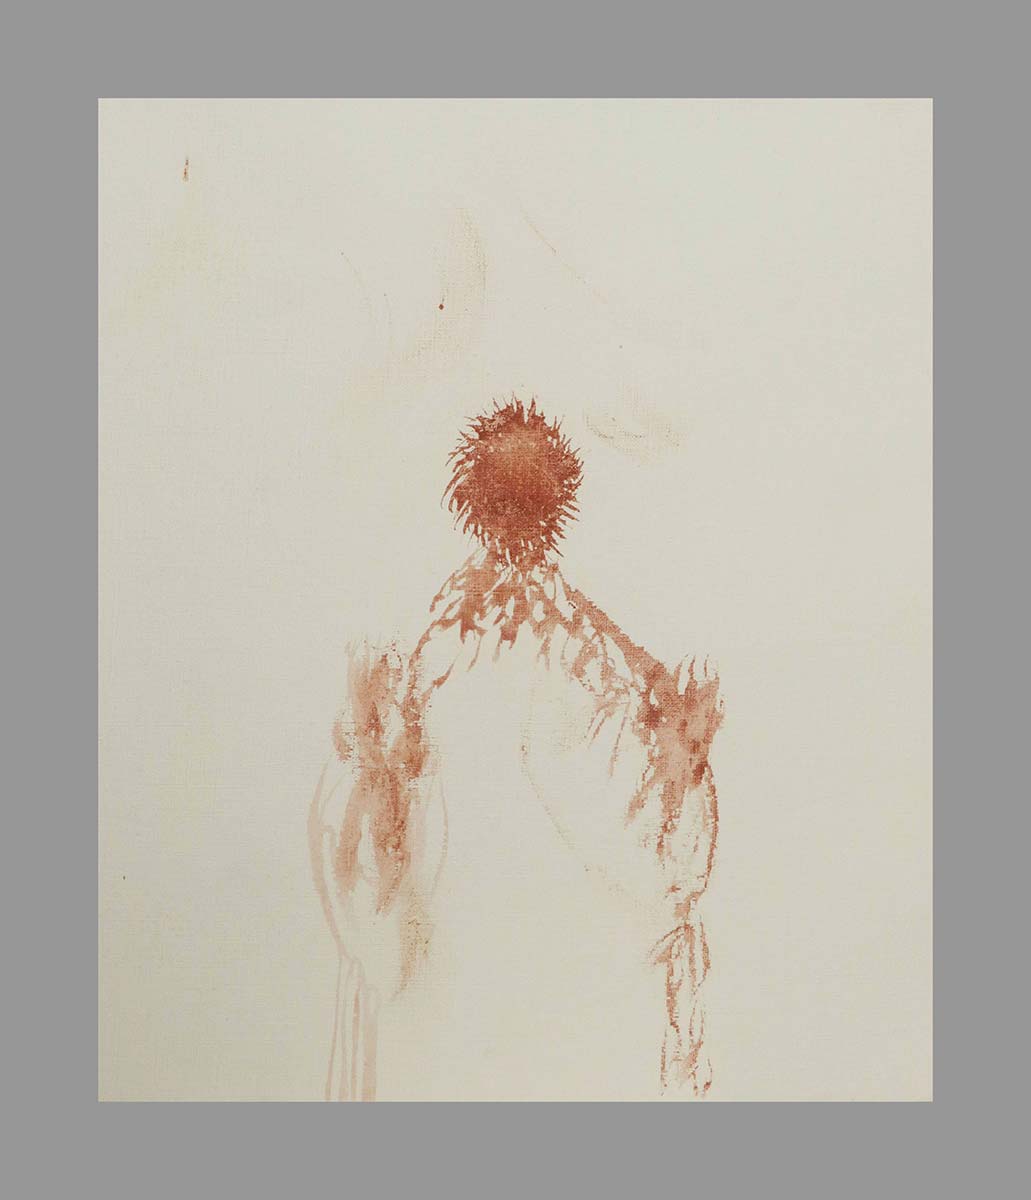 Tableau « Voix » ∼ « Voice » // 32 x 26cm // aquarelle sur papier ∼ watercolor on paper // 2020.